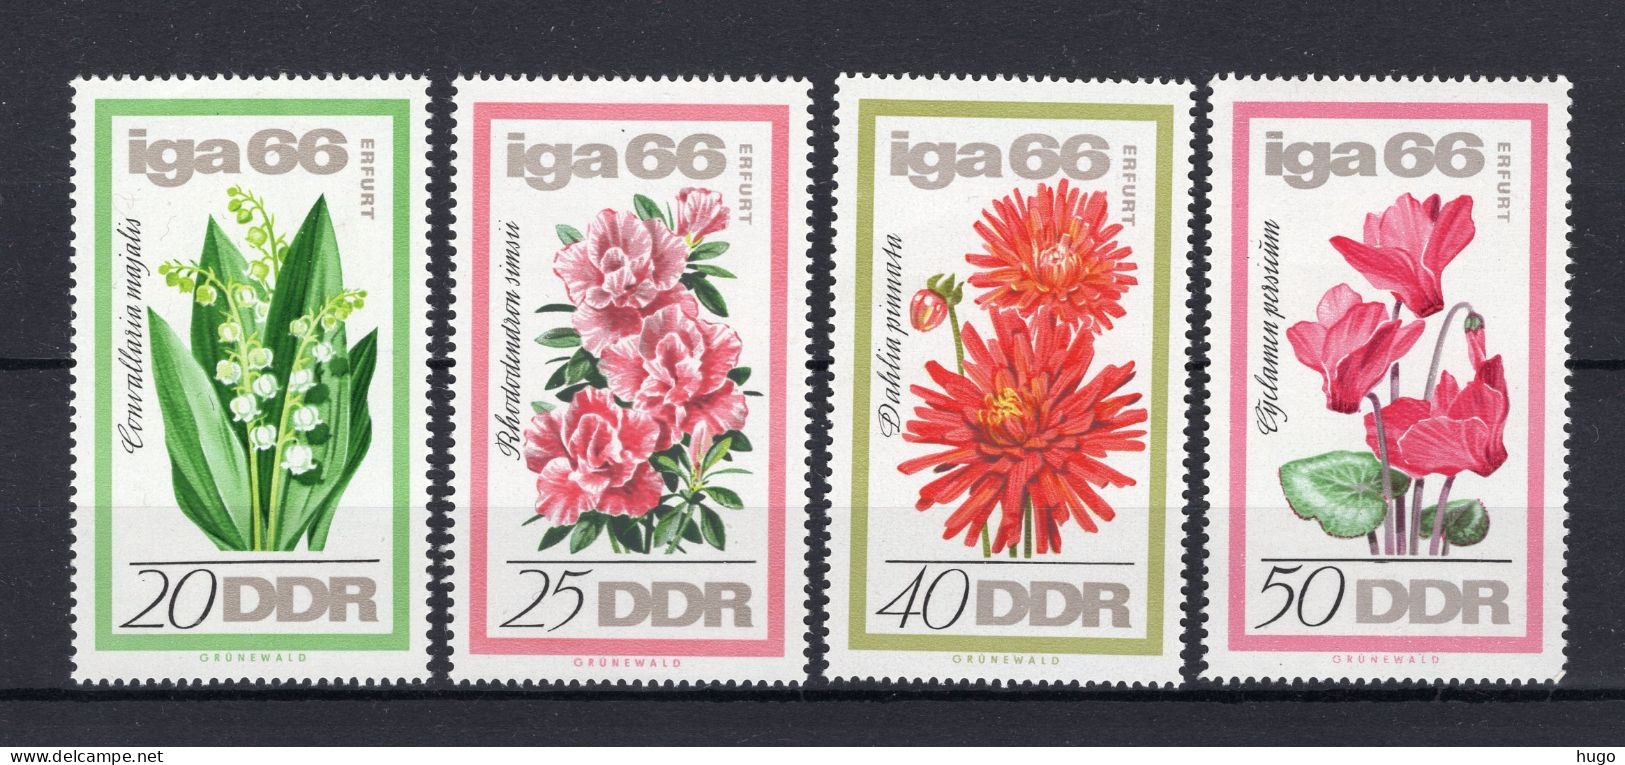 DDR Yt. 895/898 MNH 1966 - Ungebraucht